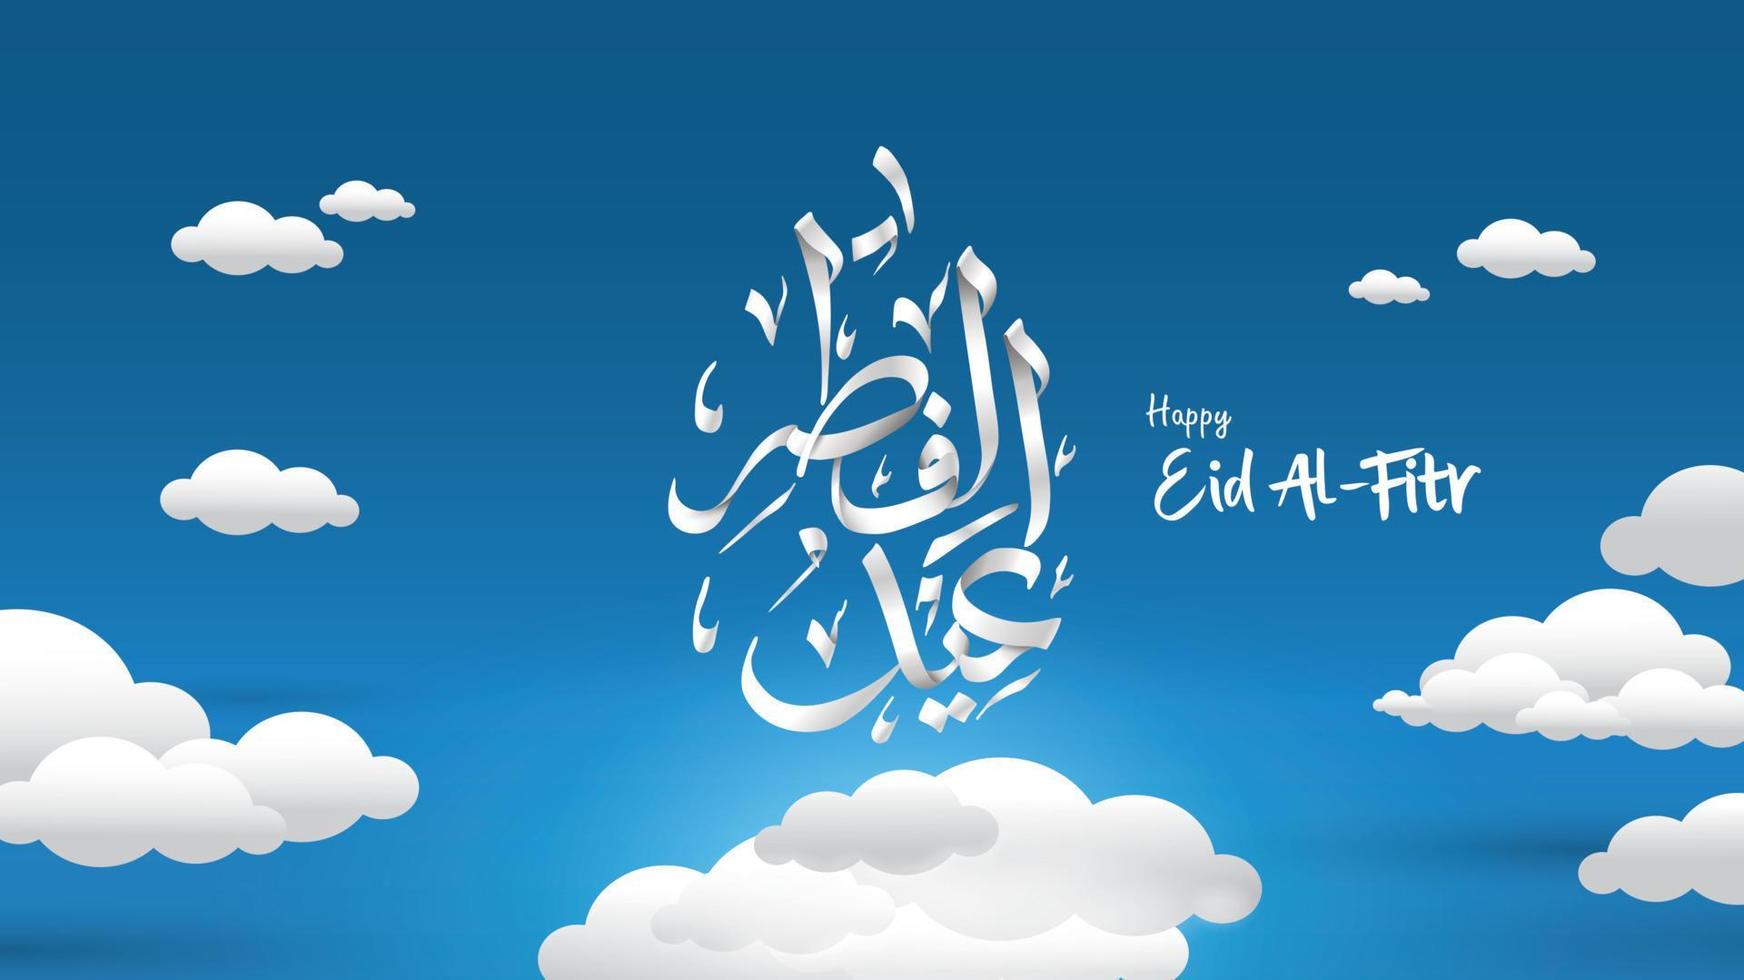 illustrazione della cartolina d'auguri di eid mubarak, vettore del fumetto di ramadan kareem che desidera il festival islamico per banner, poster, sfondo, volantino, illustrazione, brochure e sfondo di vendita